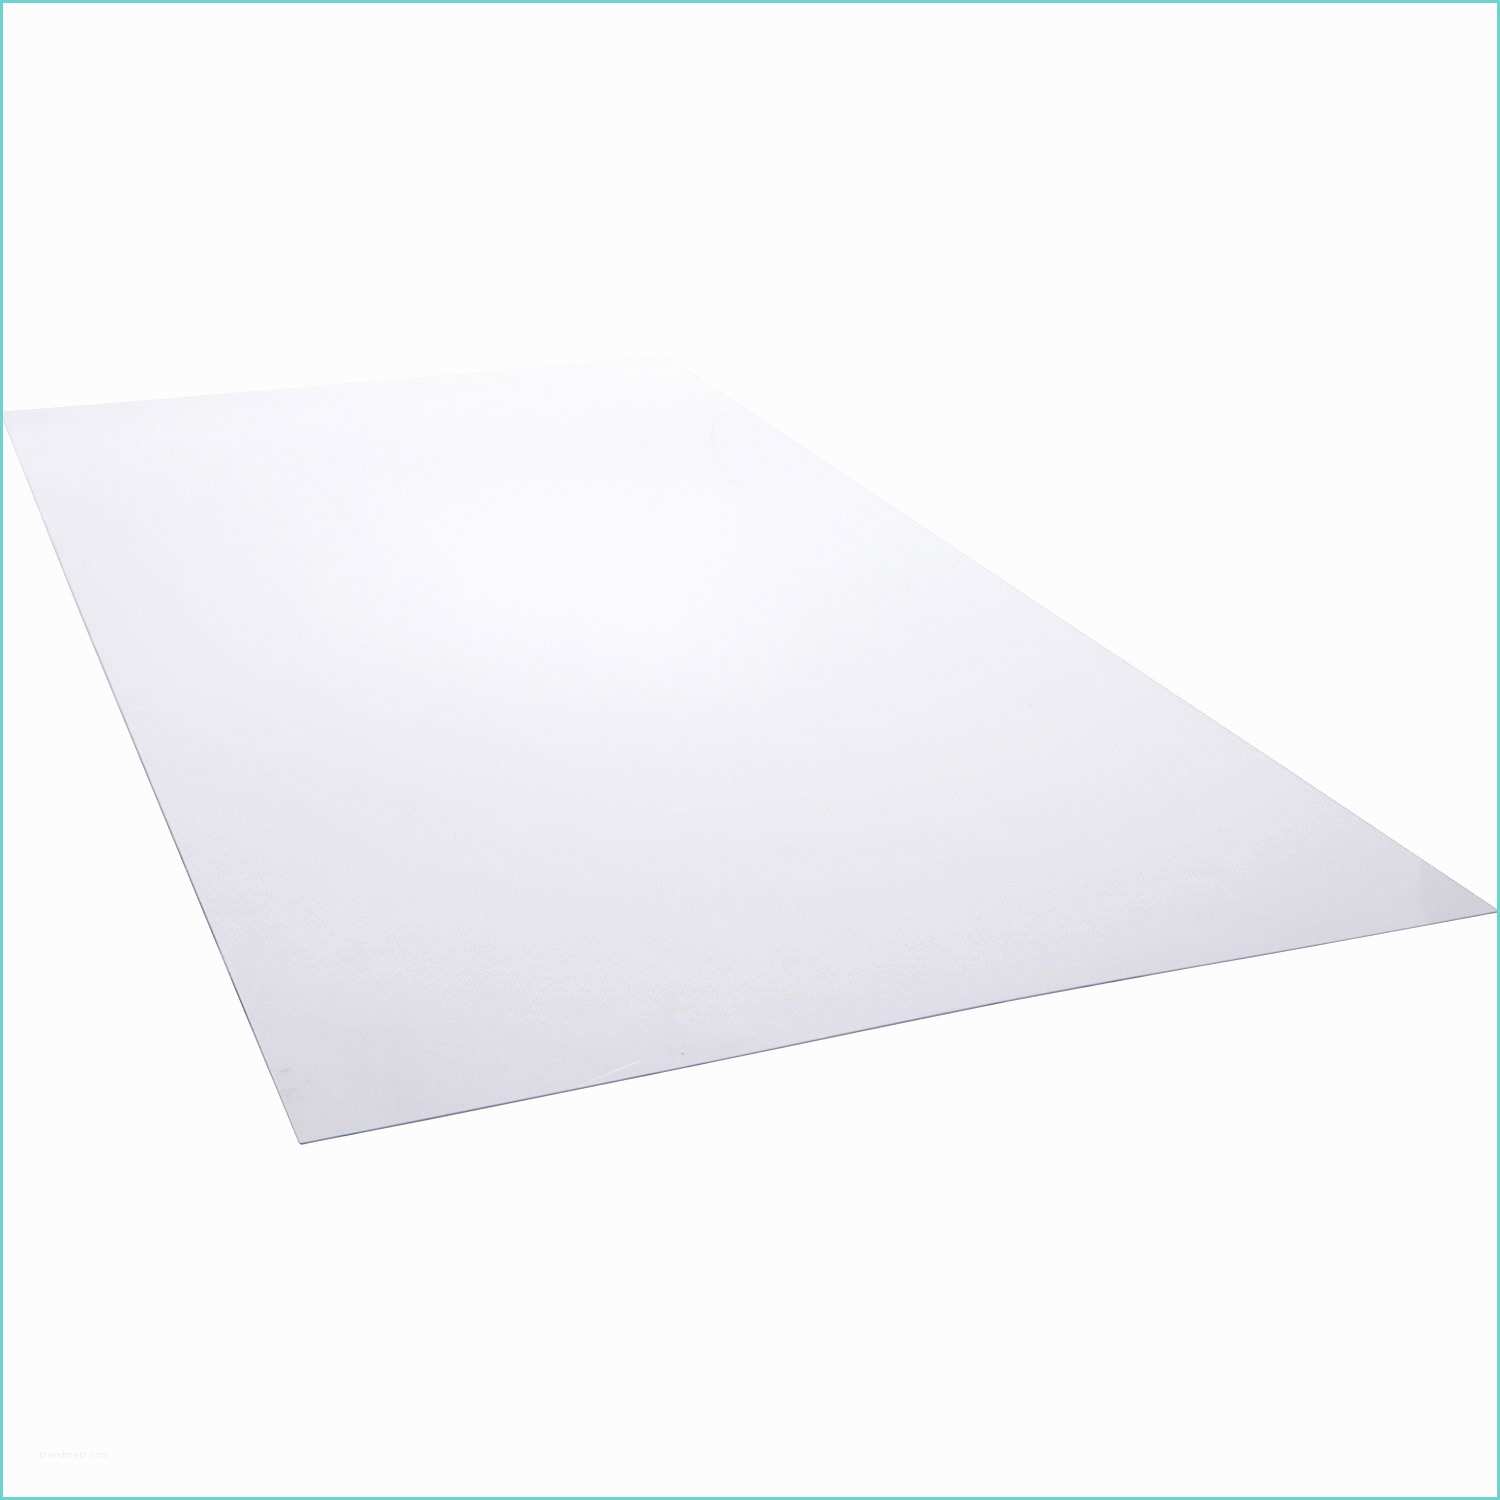 Plaque Polycarbonate Transparente Leroy Merlin Plaque Transparent L 200 X L 100 Cm 2 5 Mm